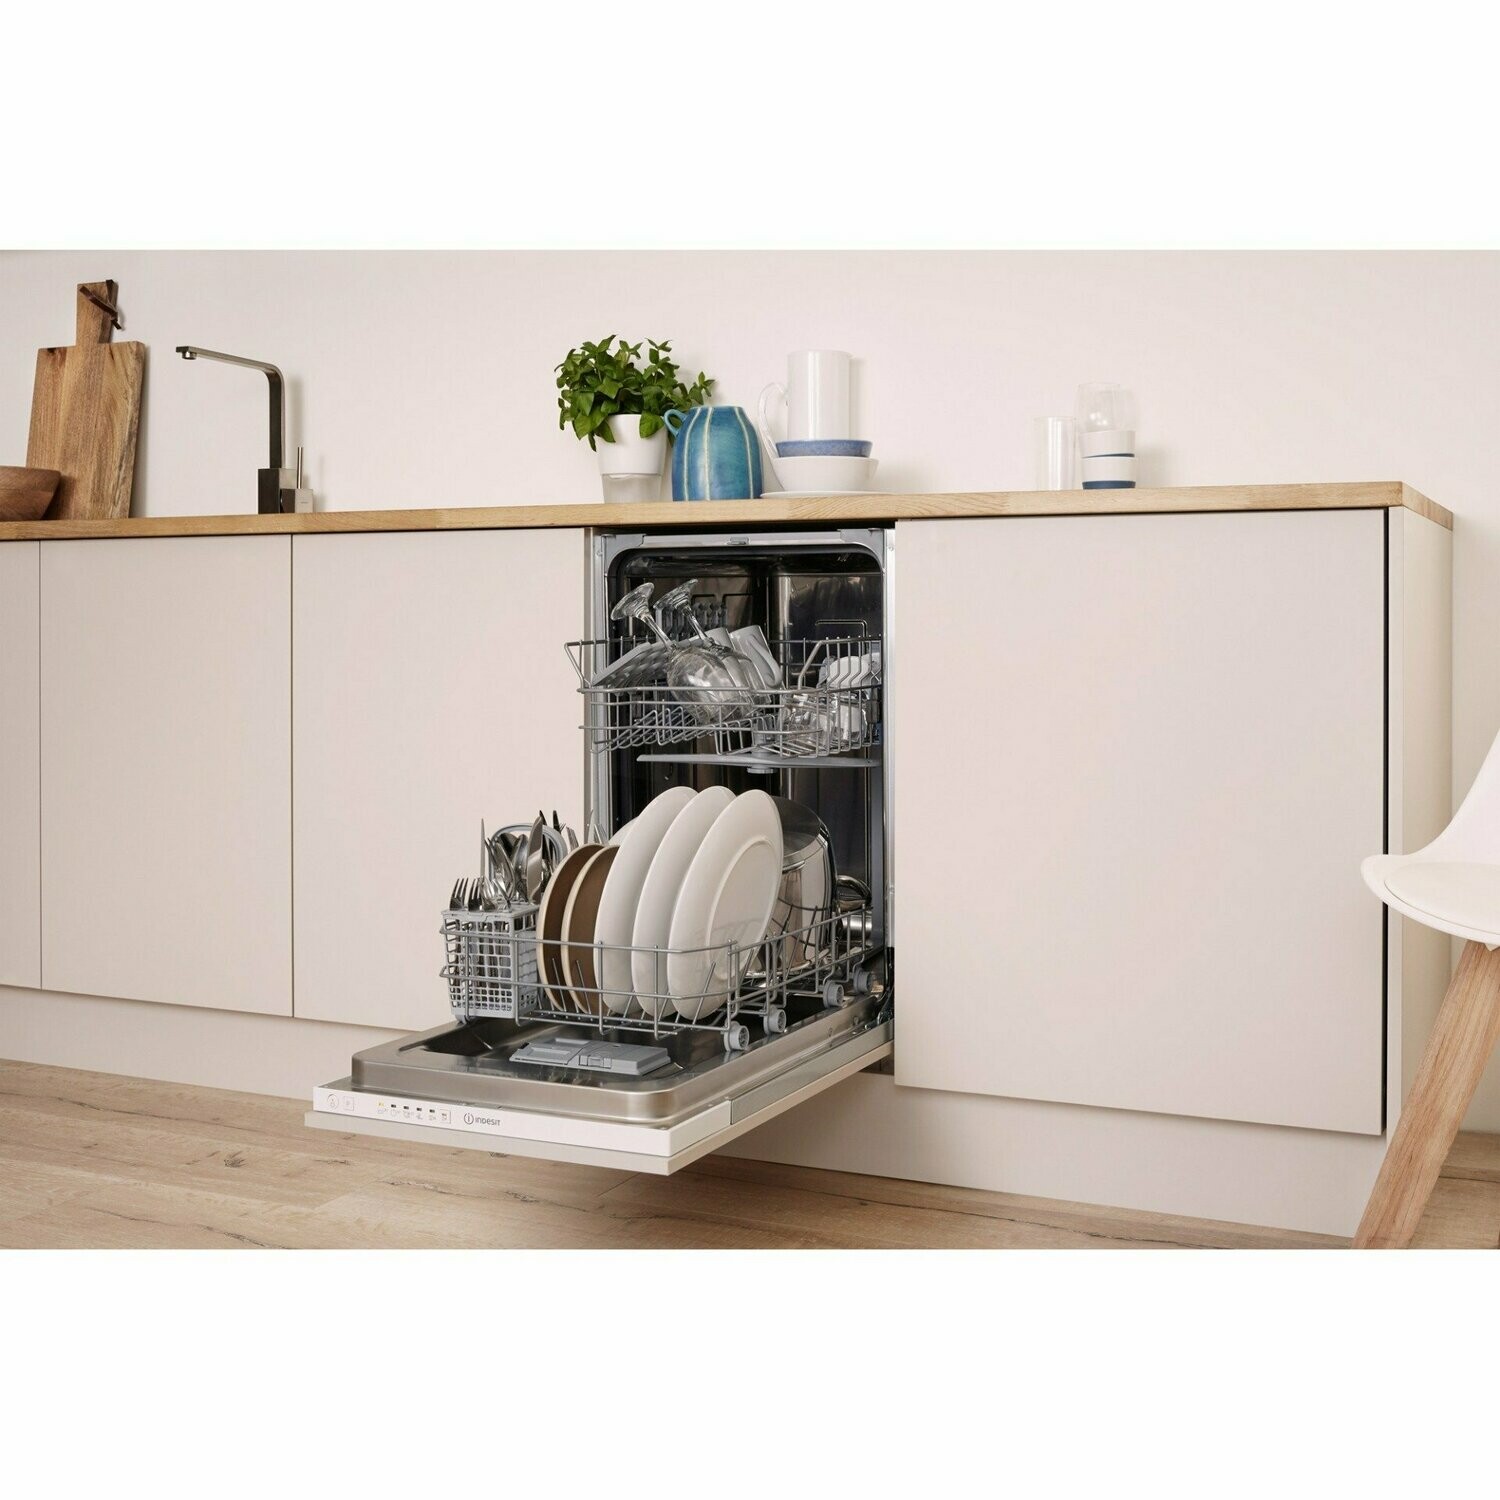 Посудомоечная машина индезит 45 см. Встраиваемая посудомоечная машина 45 см Whirlpool WSIC 3023 PFEX. Dsie 2b19 поддон. Посудомоечная машина Индезит 45 см встраиваемая.